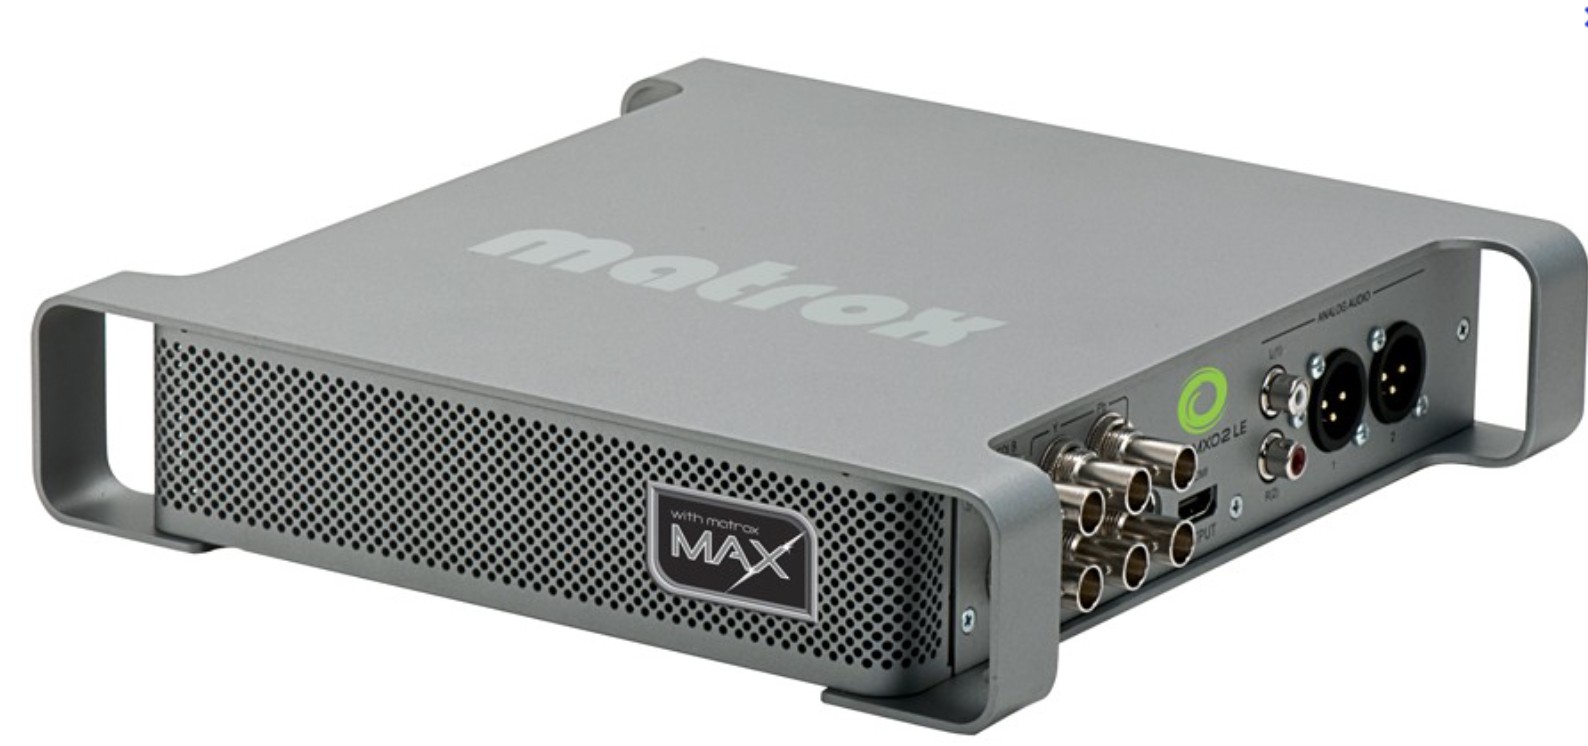 Annonce occasions - Boitier d'acquisition vidéo Matrox MX02 LE MAX - Le  Repaire - Le Repaire